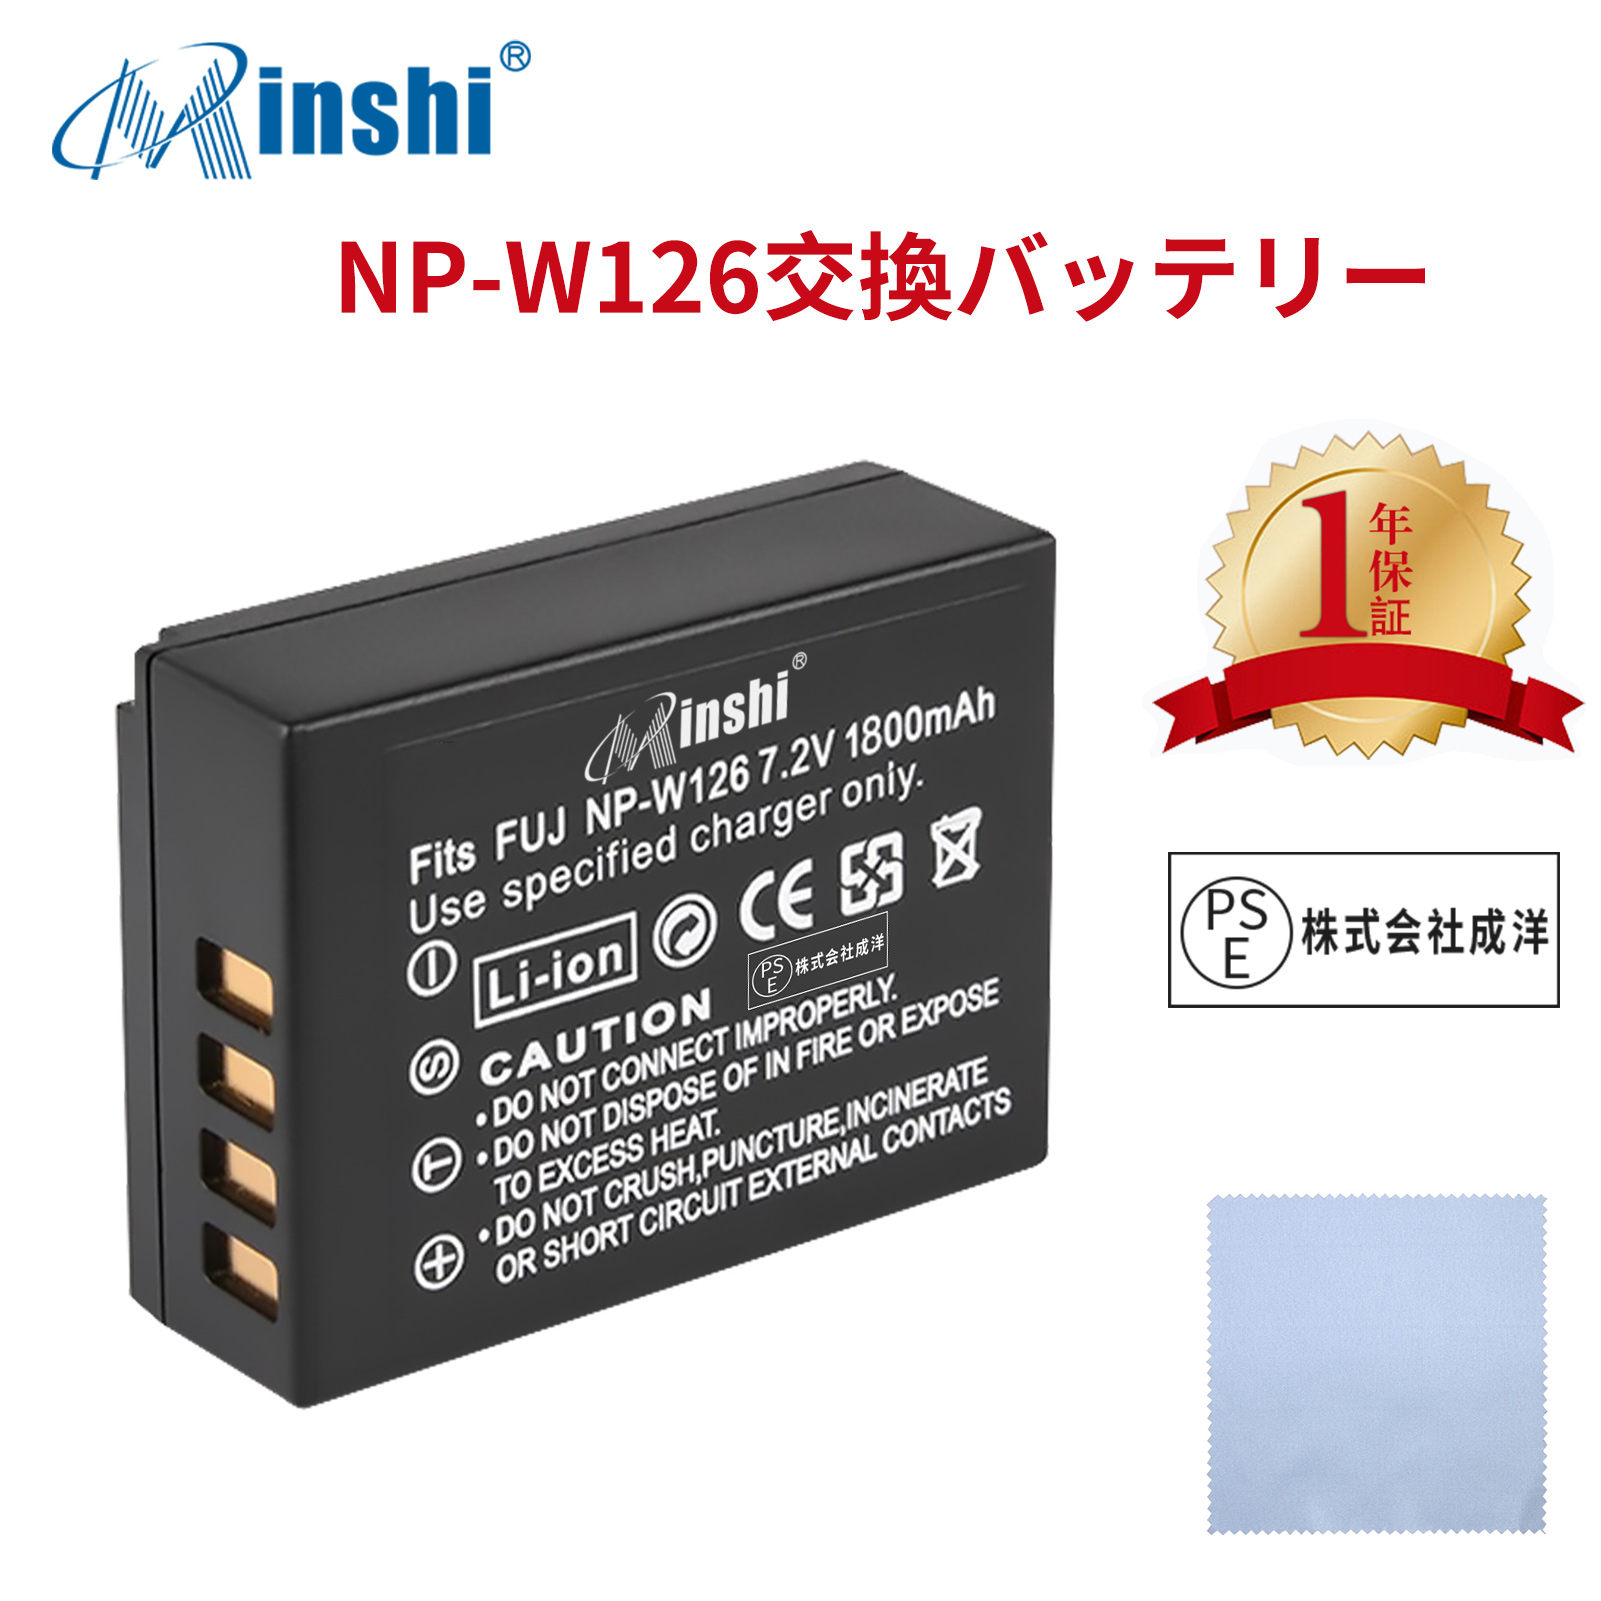 【クロス付き】minshi FUJIFILM X100F NP-W126S 【1800mAh 7.2V】 NP-W126 NP-W126S高品質 NP-W126S NP-W126互換バッテリー